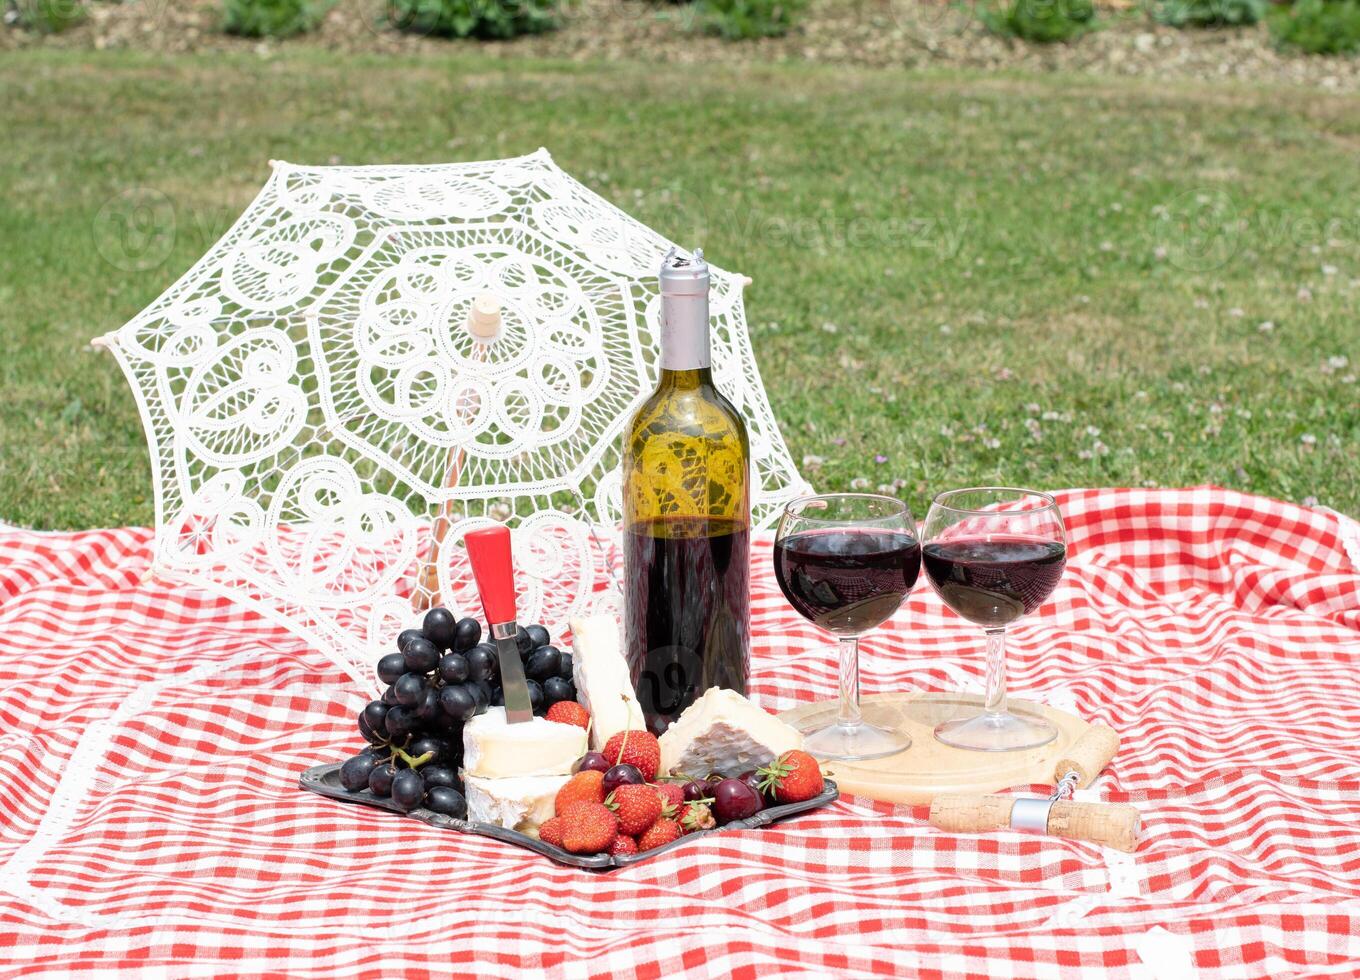 zomer picknick Aan een groen gazon met rood wijn, kaas en vers bessen, druiven foto